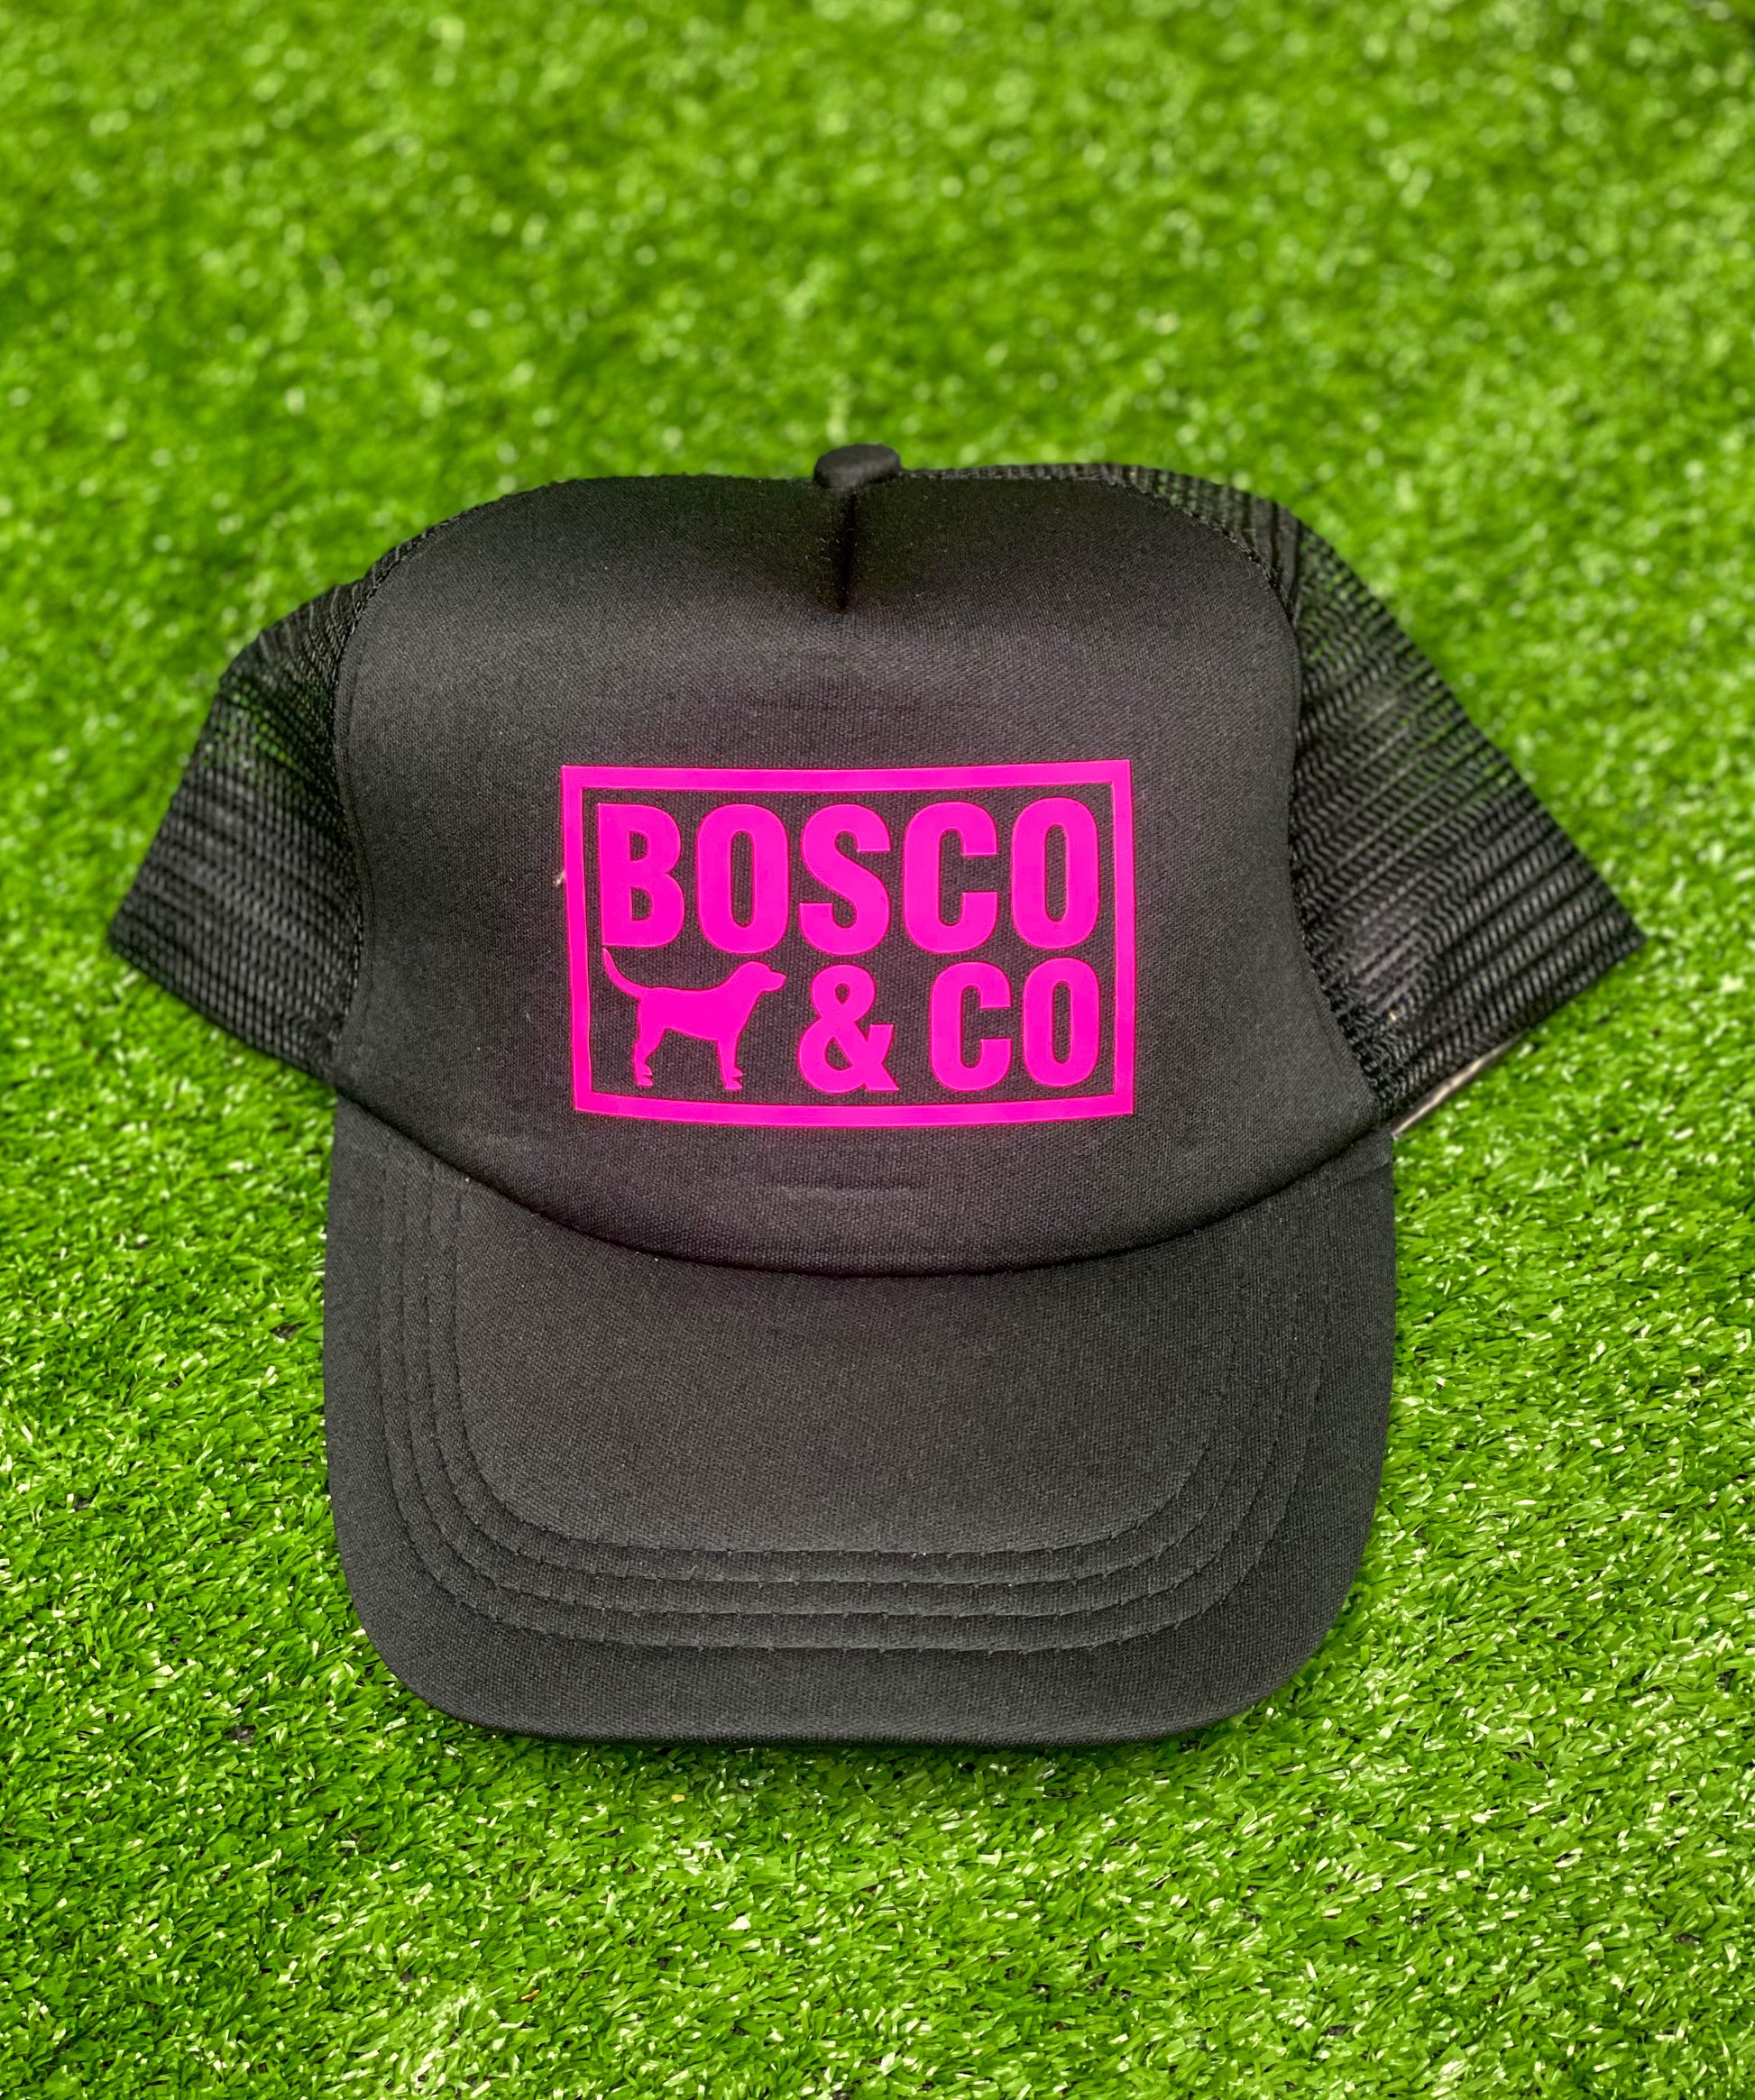 Bosco & Co Hats